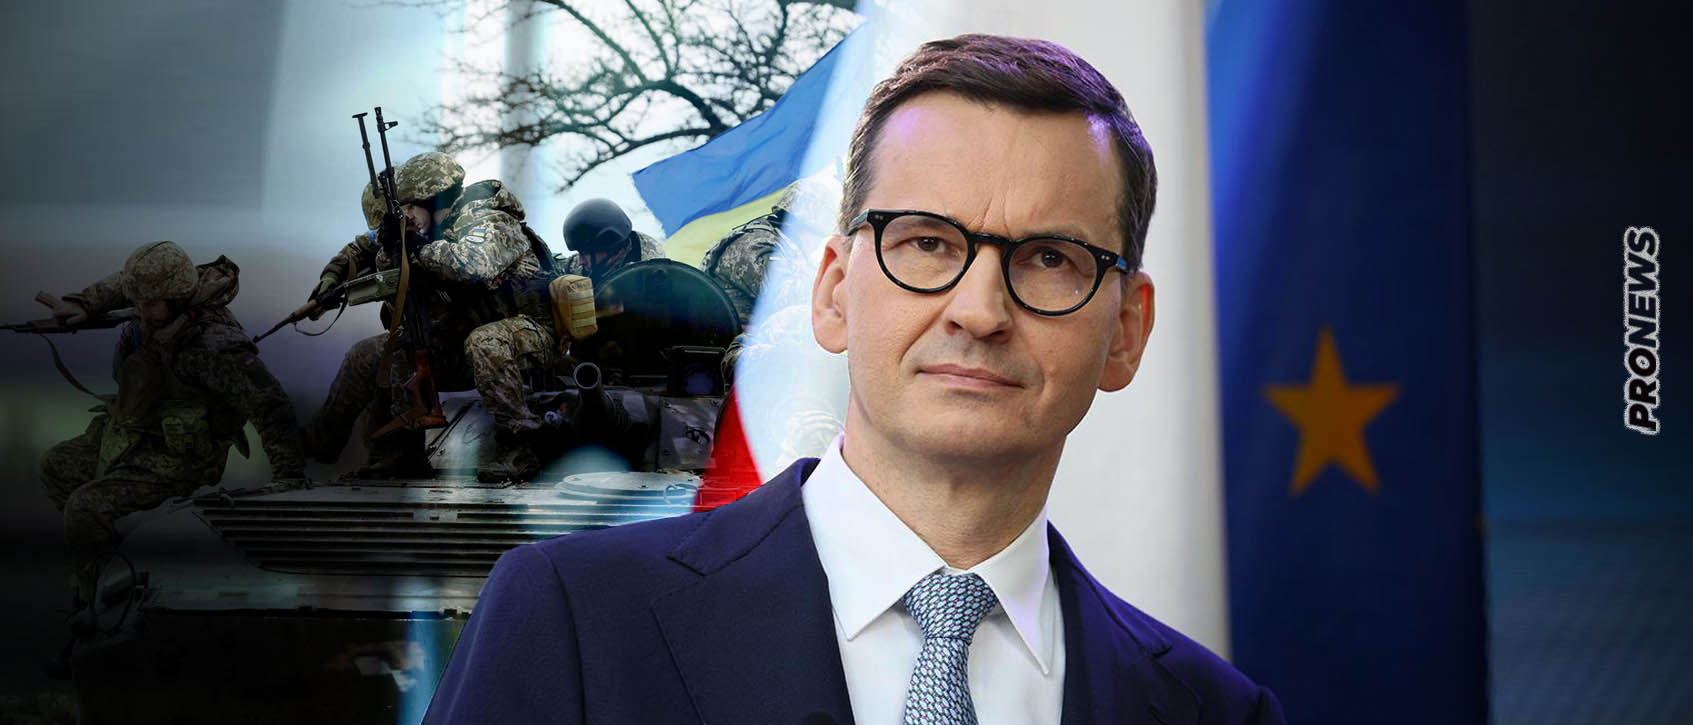 Η Πολωνία διακόπτει τις προμήθειες όπλων στην Ουκρανία! – «Τα θέλουμε για την δική μας άμυνα»